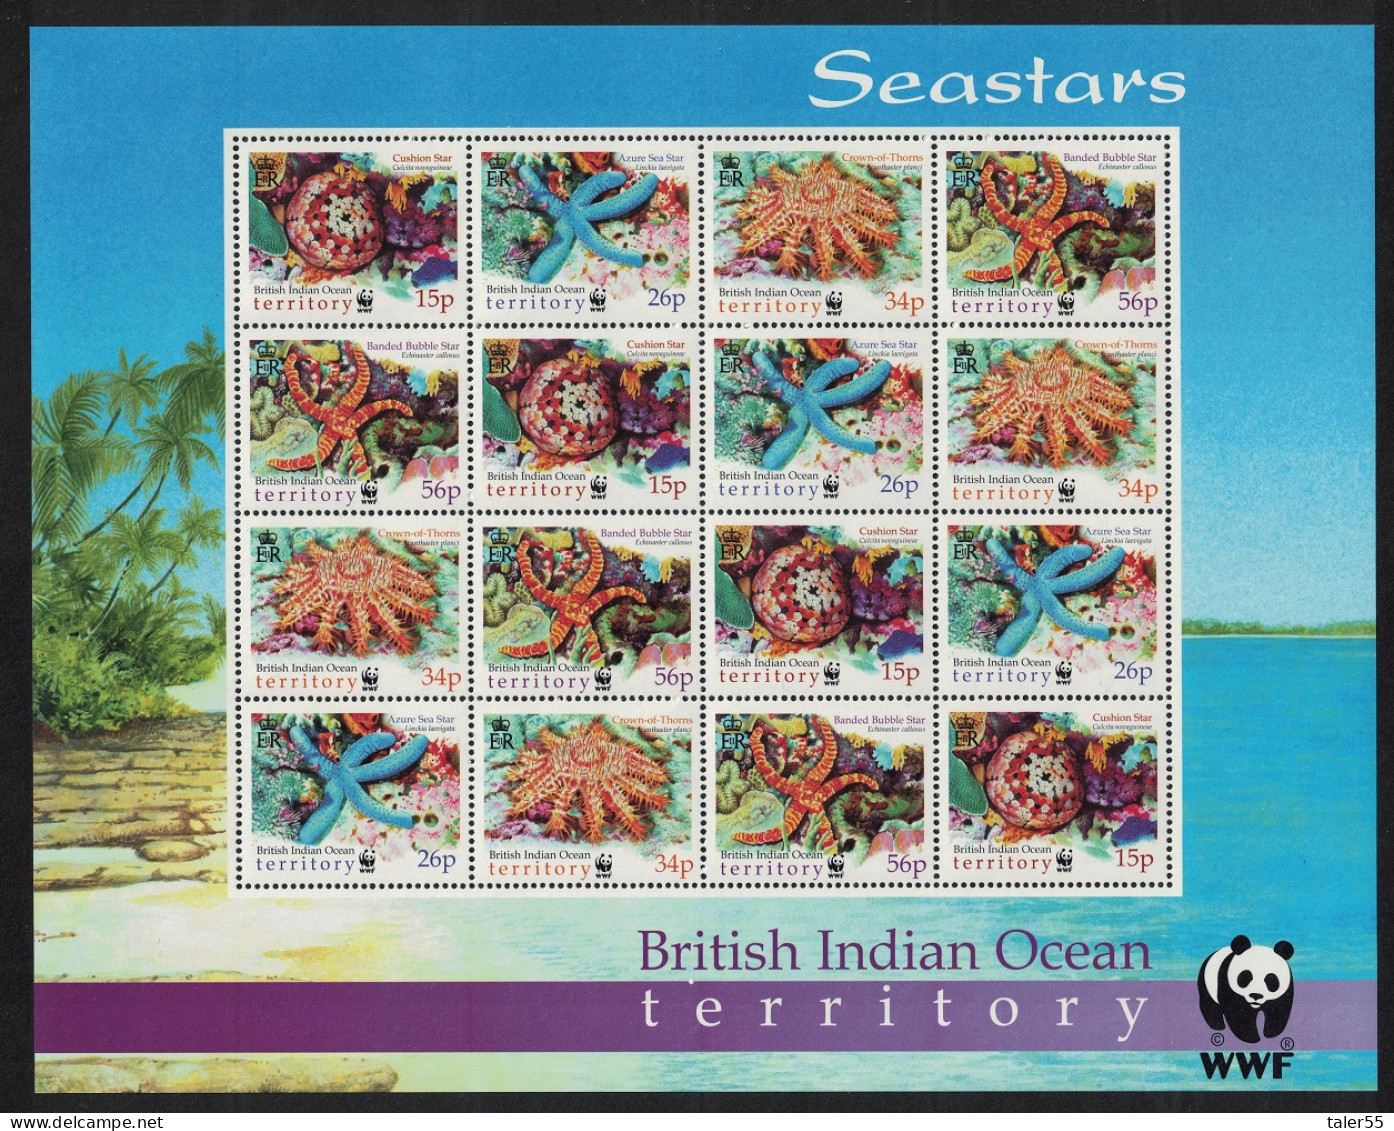 BIOT WWF Sea Stars Sheetlet Of 4 Sets 2001 MNH SG#253-256 MI#266-269 Sc#231-234 - Britisches Territorium Im Indischen Ozean